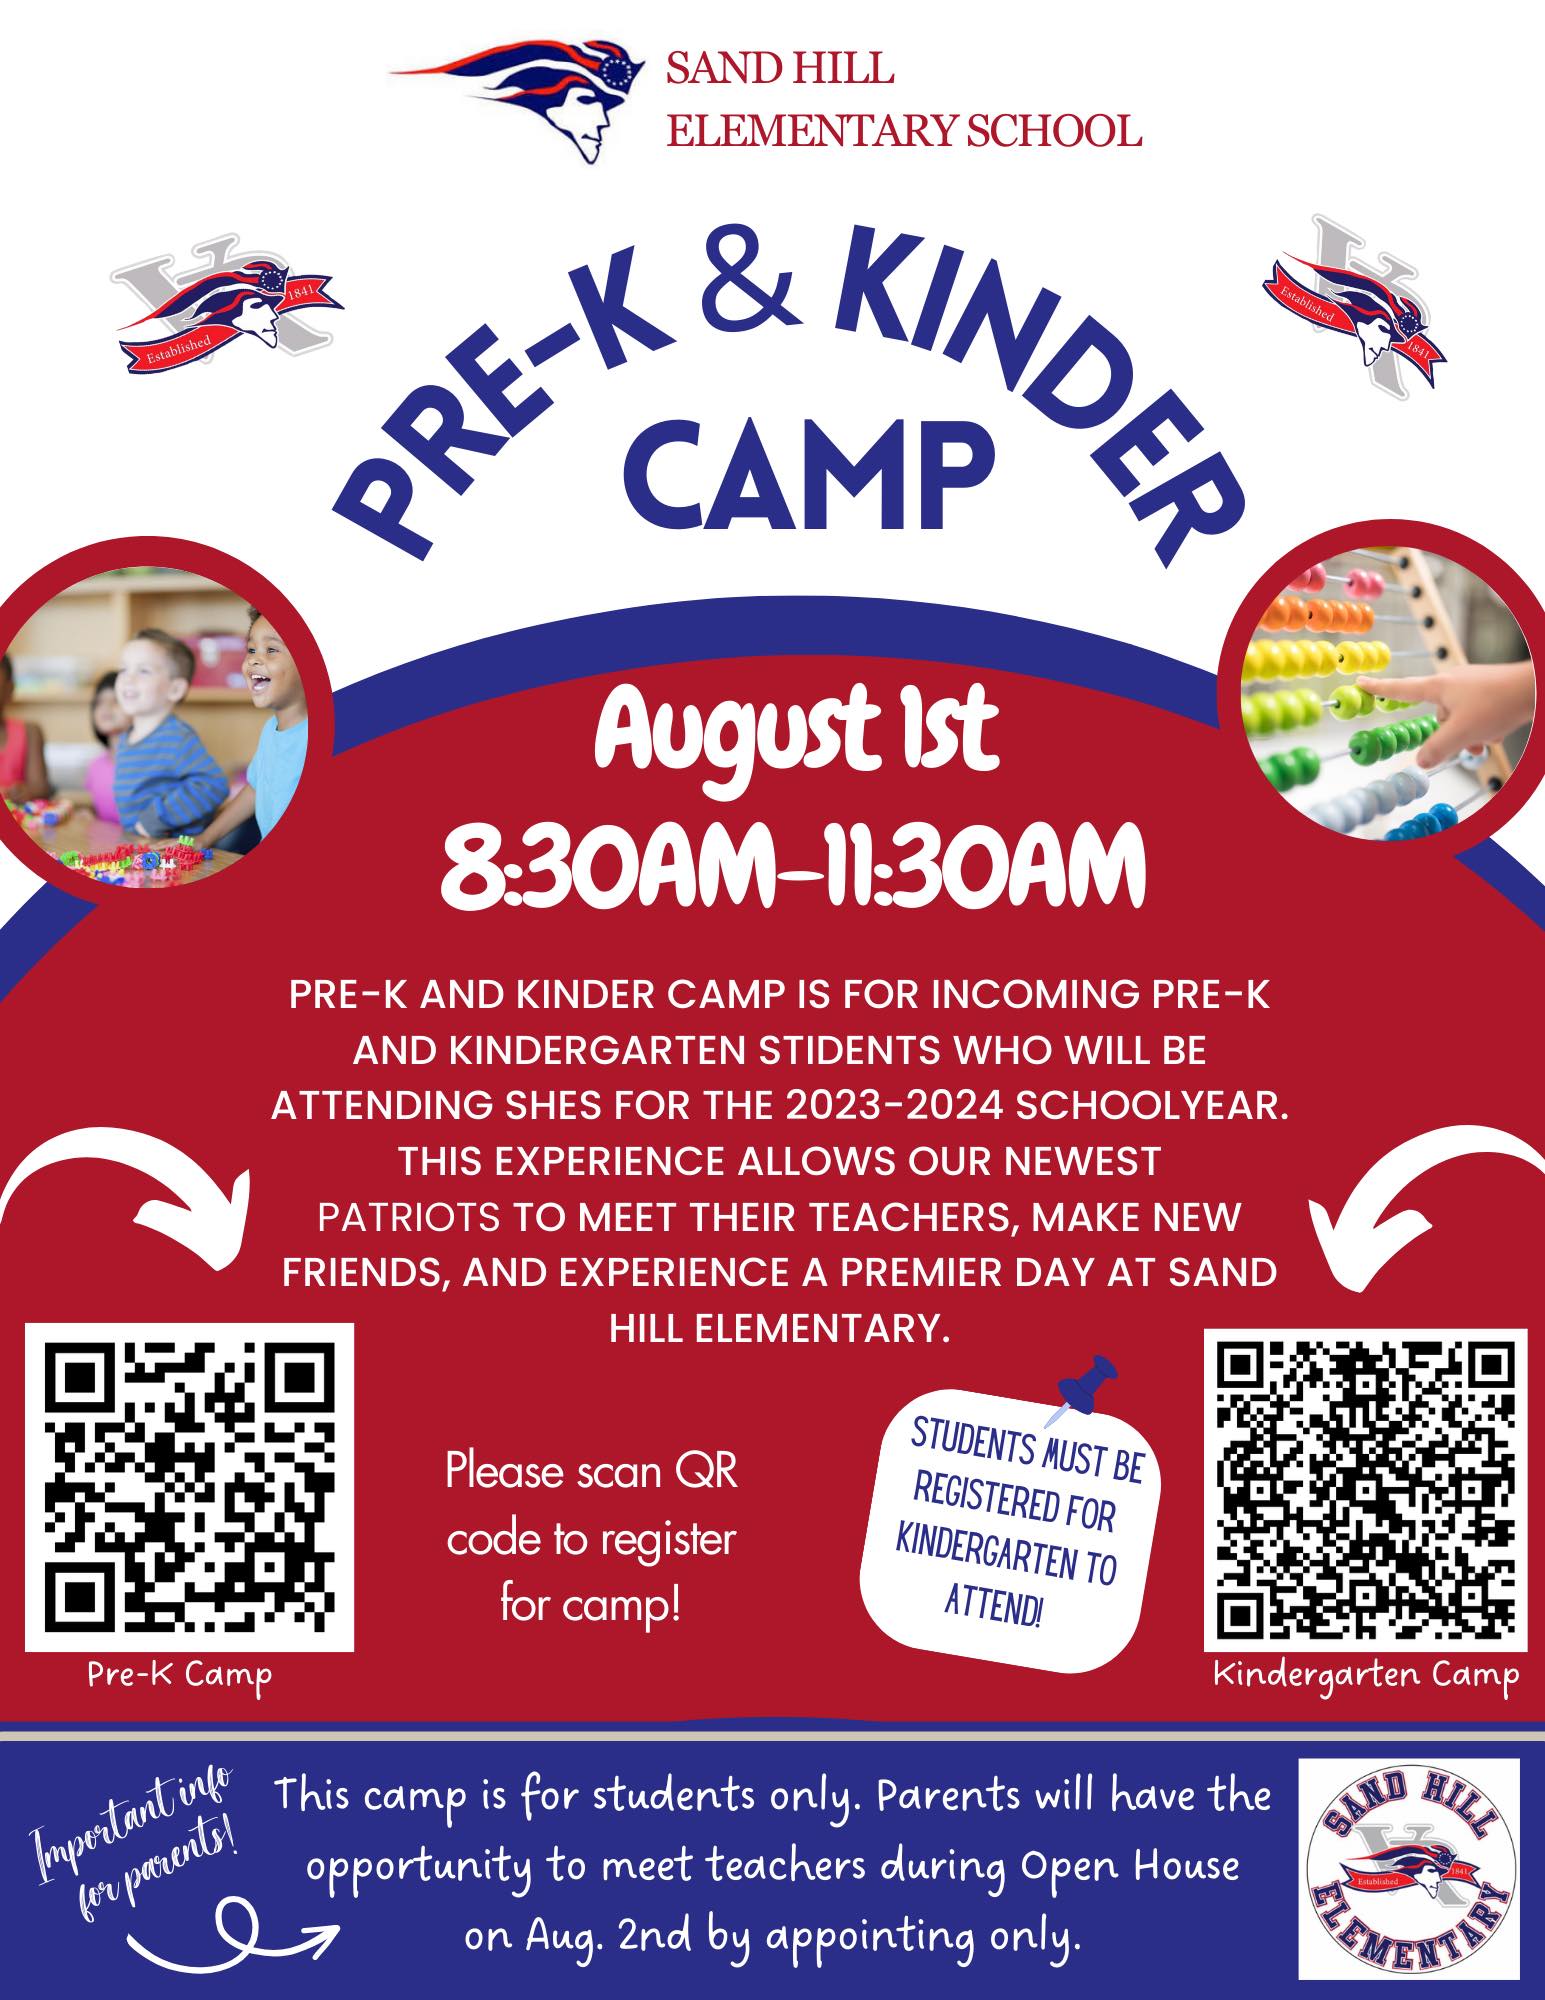 PreK and Kindergarten Camp